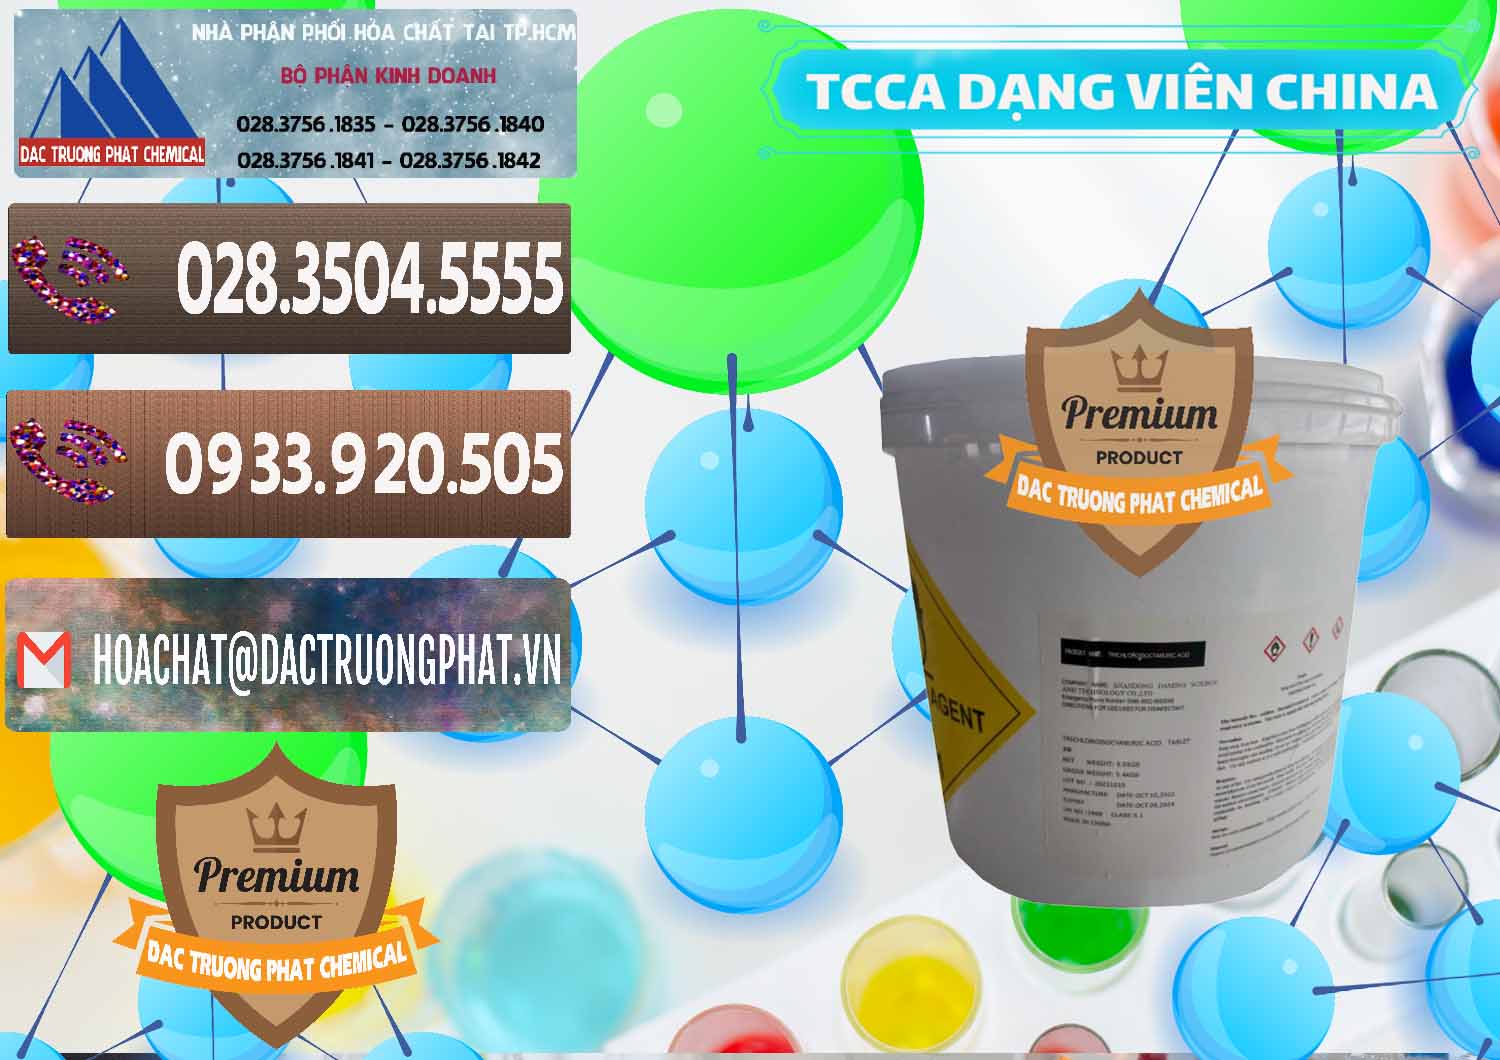 Công ty chuyên bán và cung ứng TCCA - Acid Trichloroisocyanuric Dạng Viên Thùng 5kg Trung Quốc China - 0379 - Công ty bán - phân phối hóa chất tại TP.HCM - hoachatviet.net